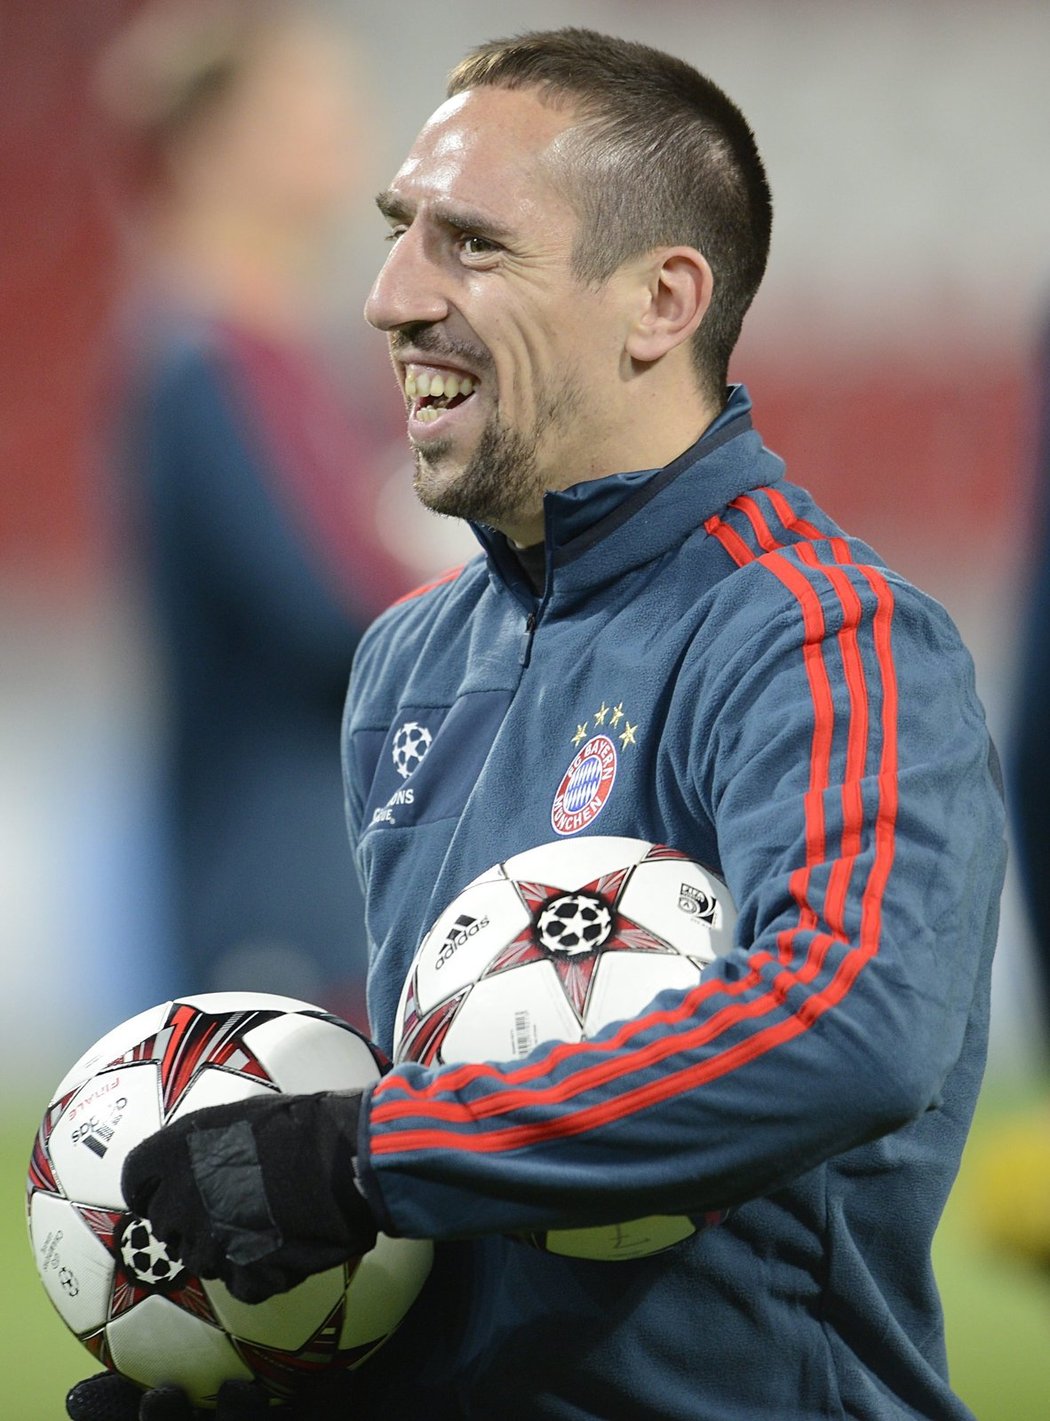 Guardiola byl i na konci tréninku v dobré náladě, s Francouzem Ribérym mířili do šaten v družném hovoru plném vtípků.